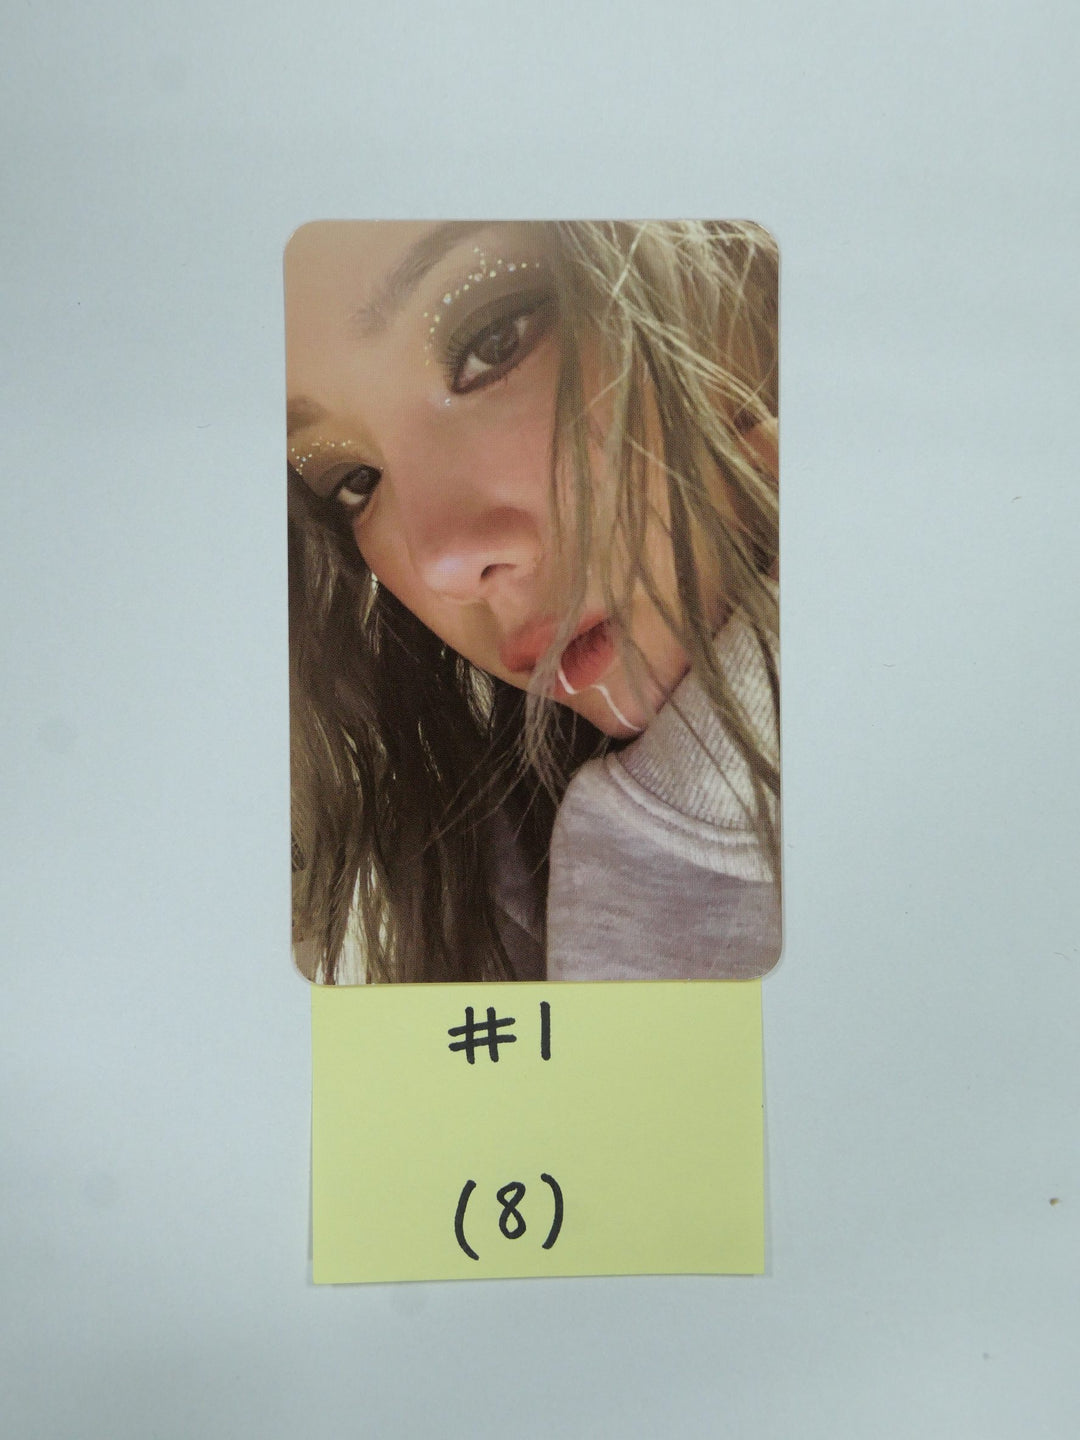 テヨン 'INVU' The 3rd Album - 公式フォトカード、ポストカード、二つ折りポスター